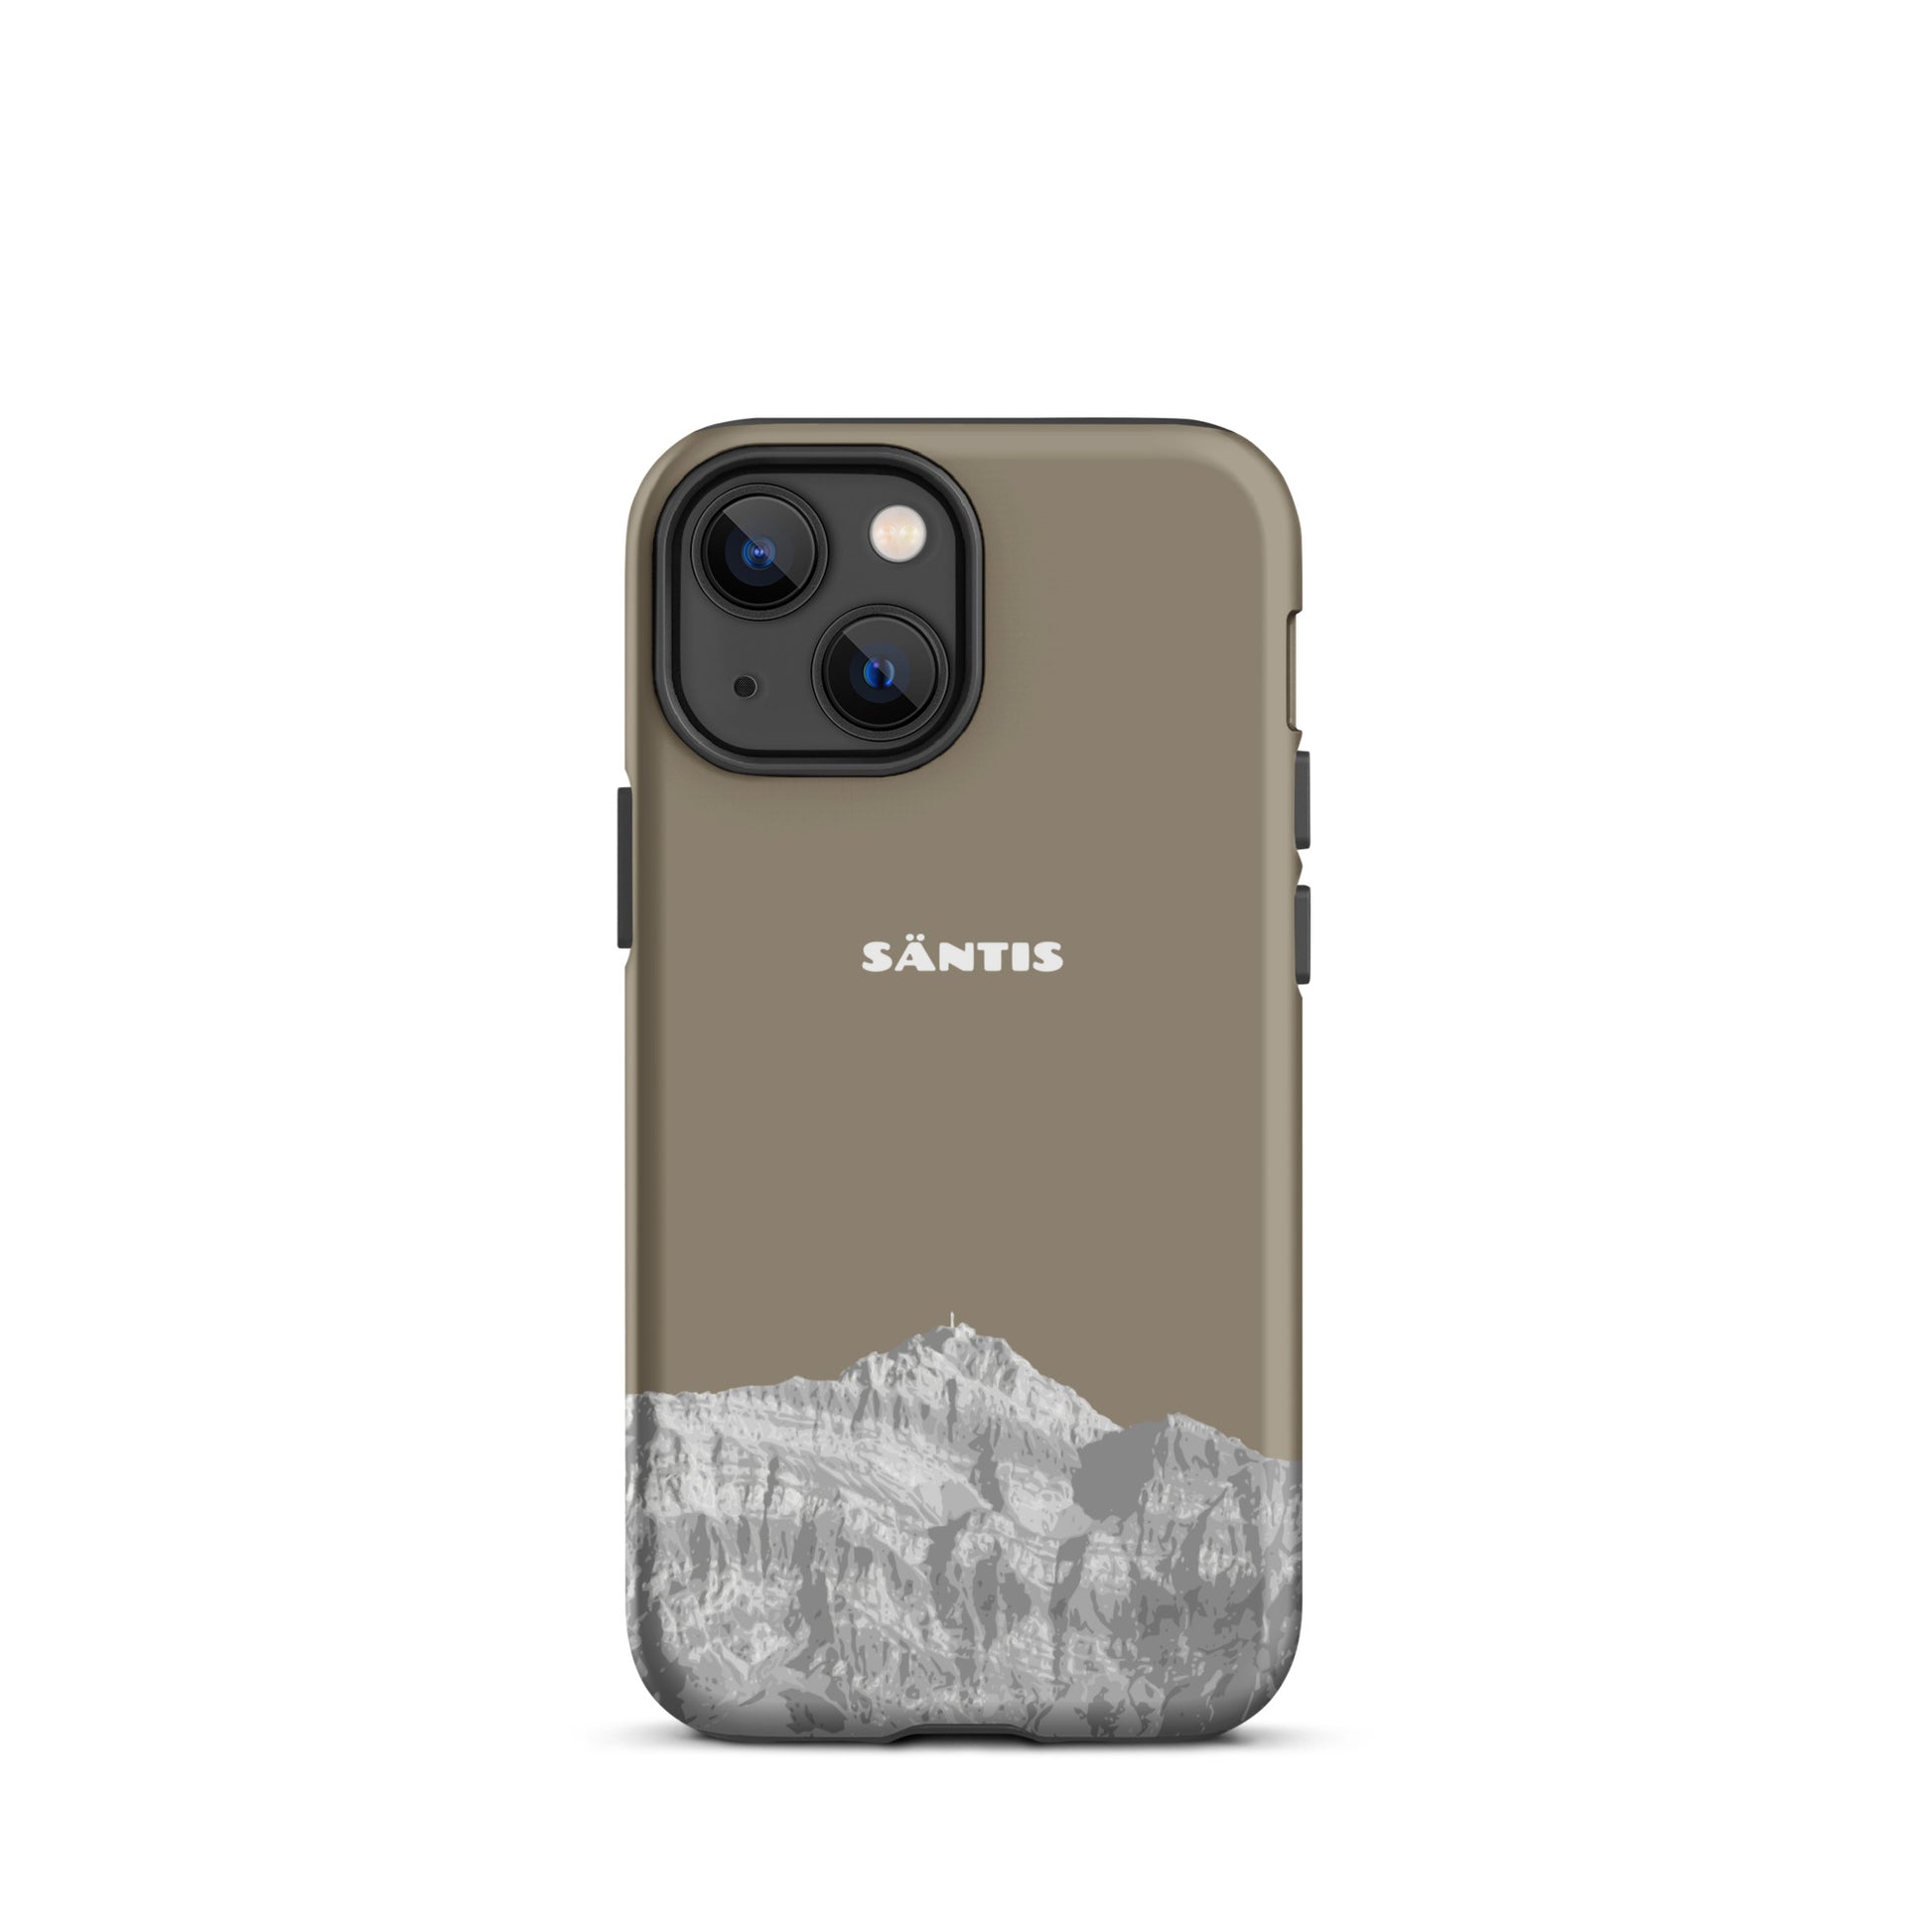 Hülle für das iPhone 13 Mini von Apple in der Farbe Graubraun, dass den Säntis im Alpstein zeigt.